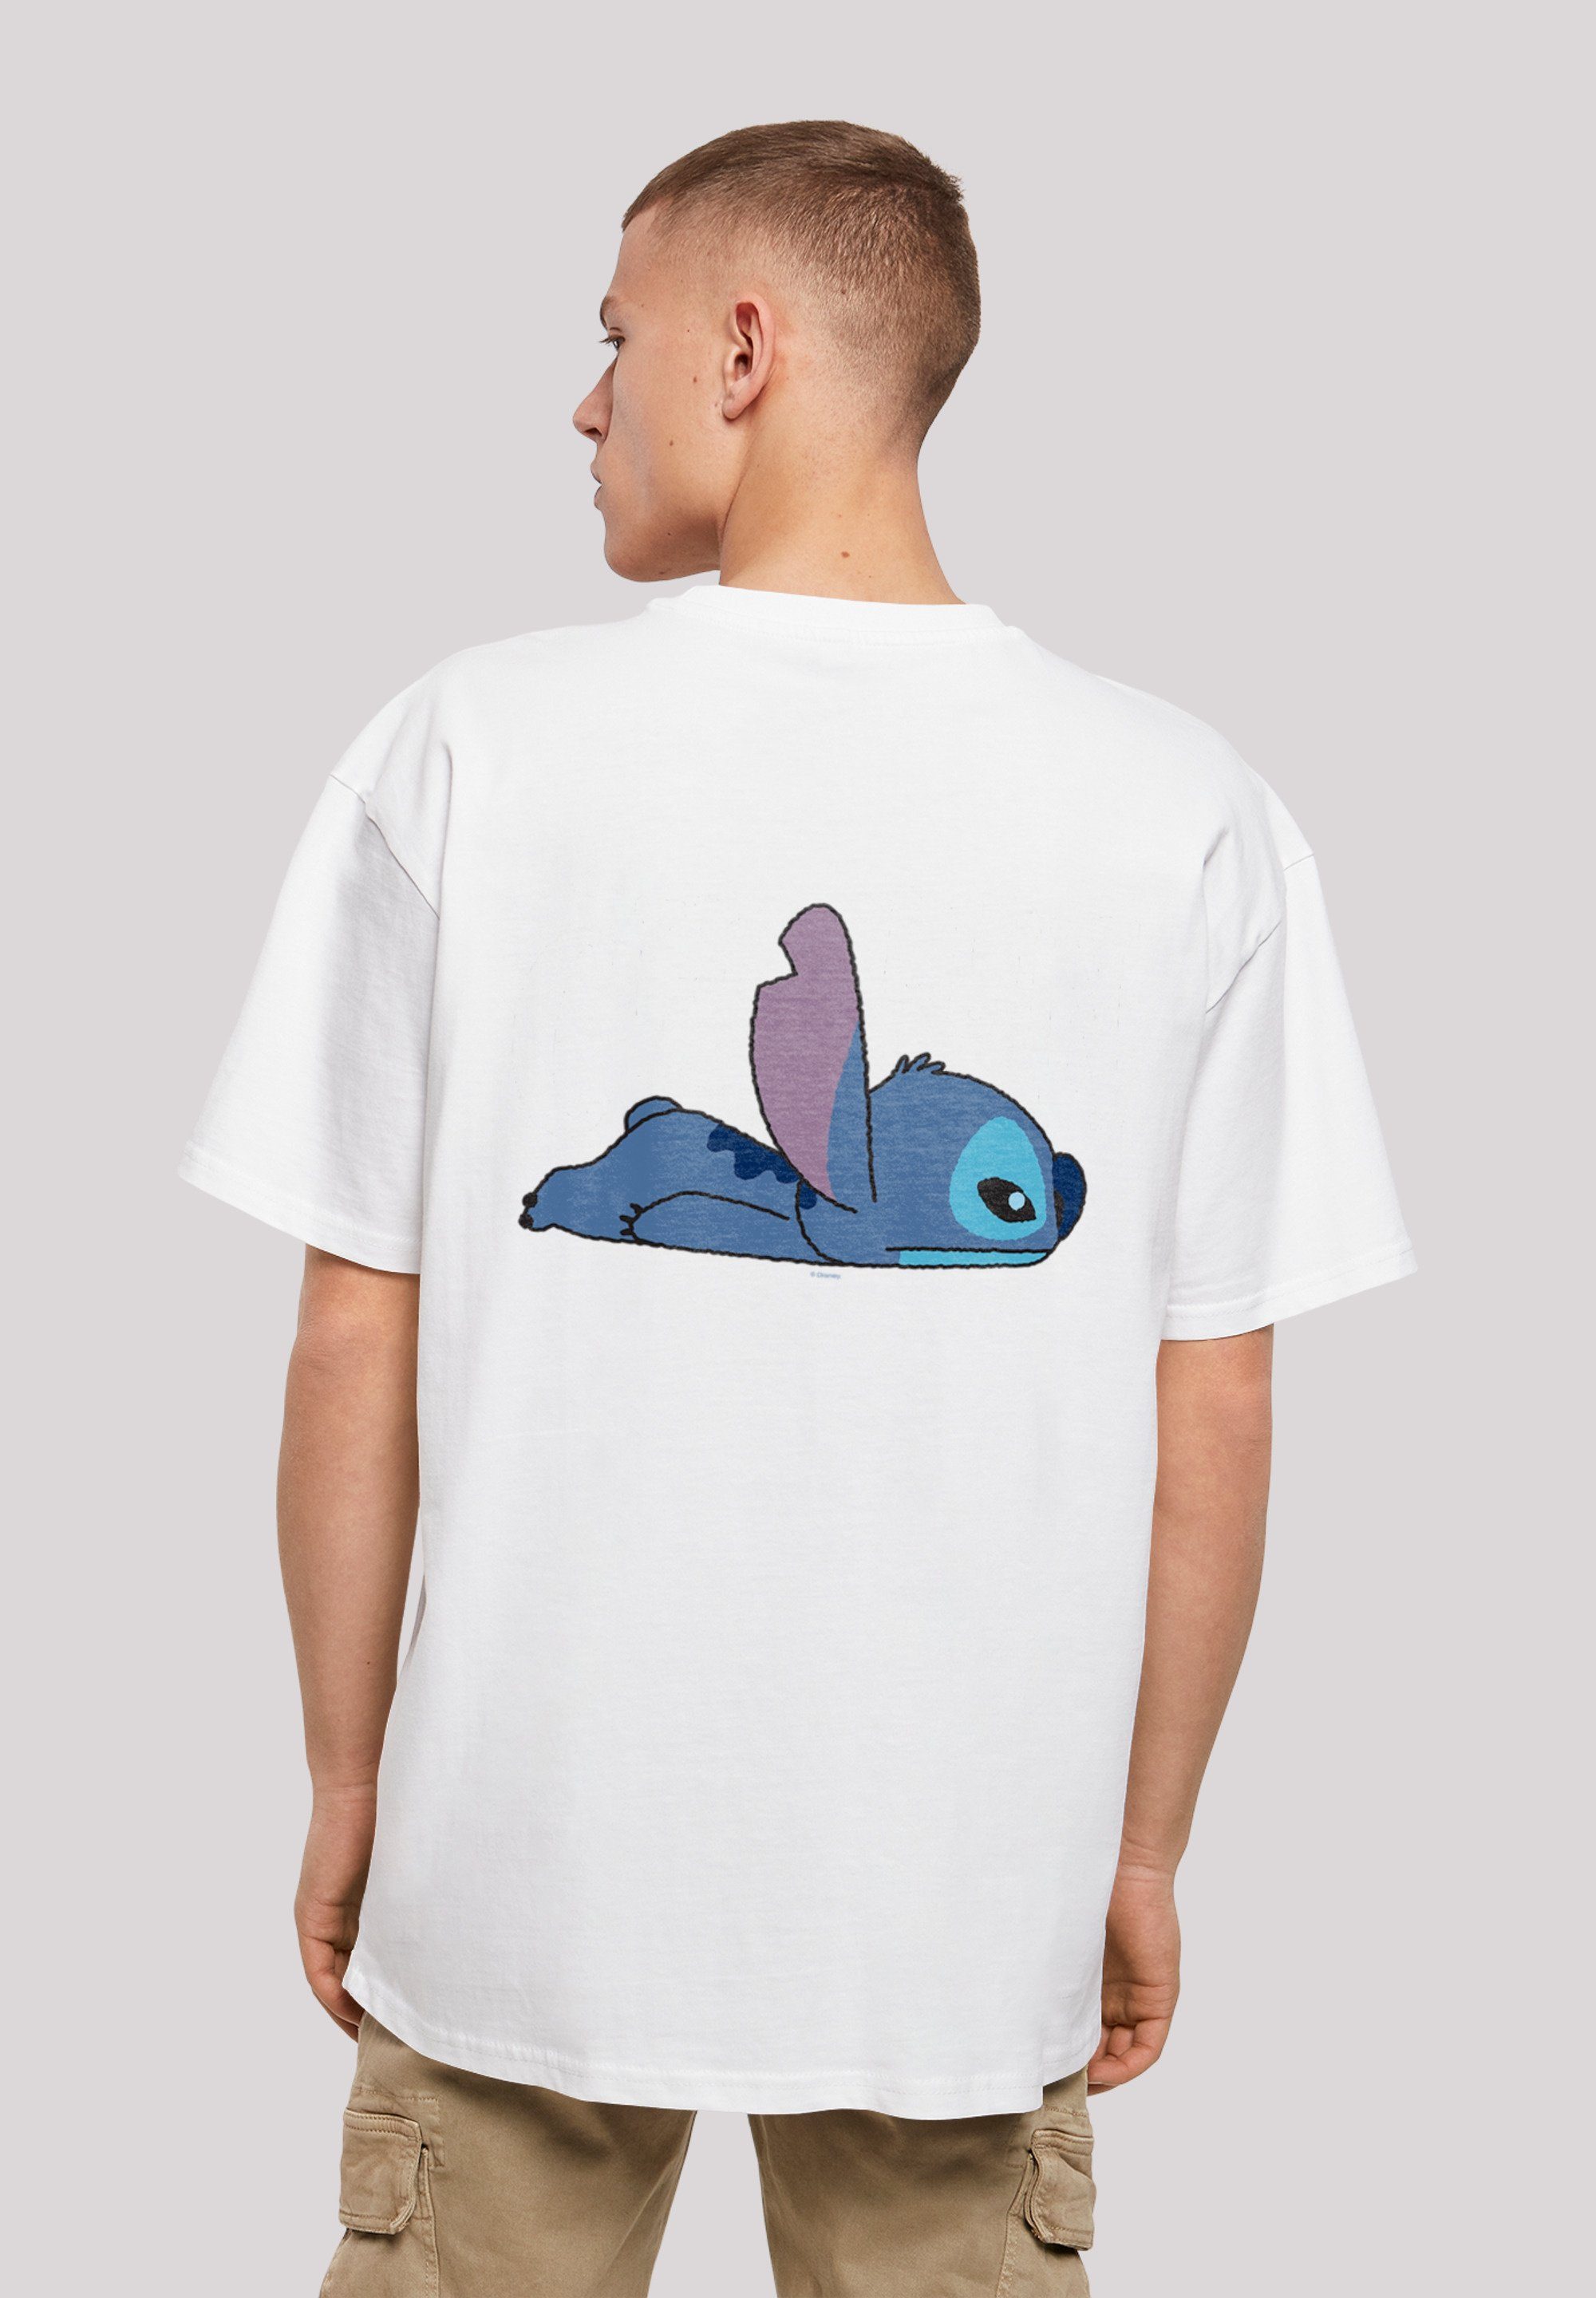 And Backside Print Print Stitch weiß Lilo Disney Breast Stitch T-Shirt F4NT4STIC